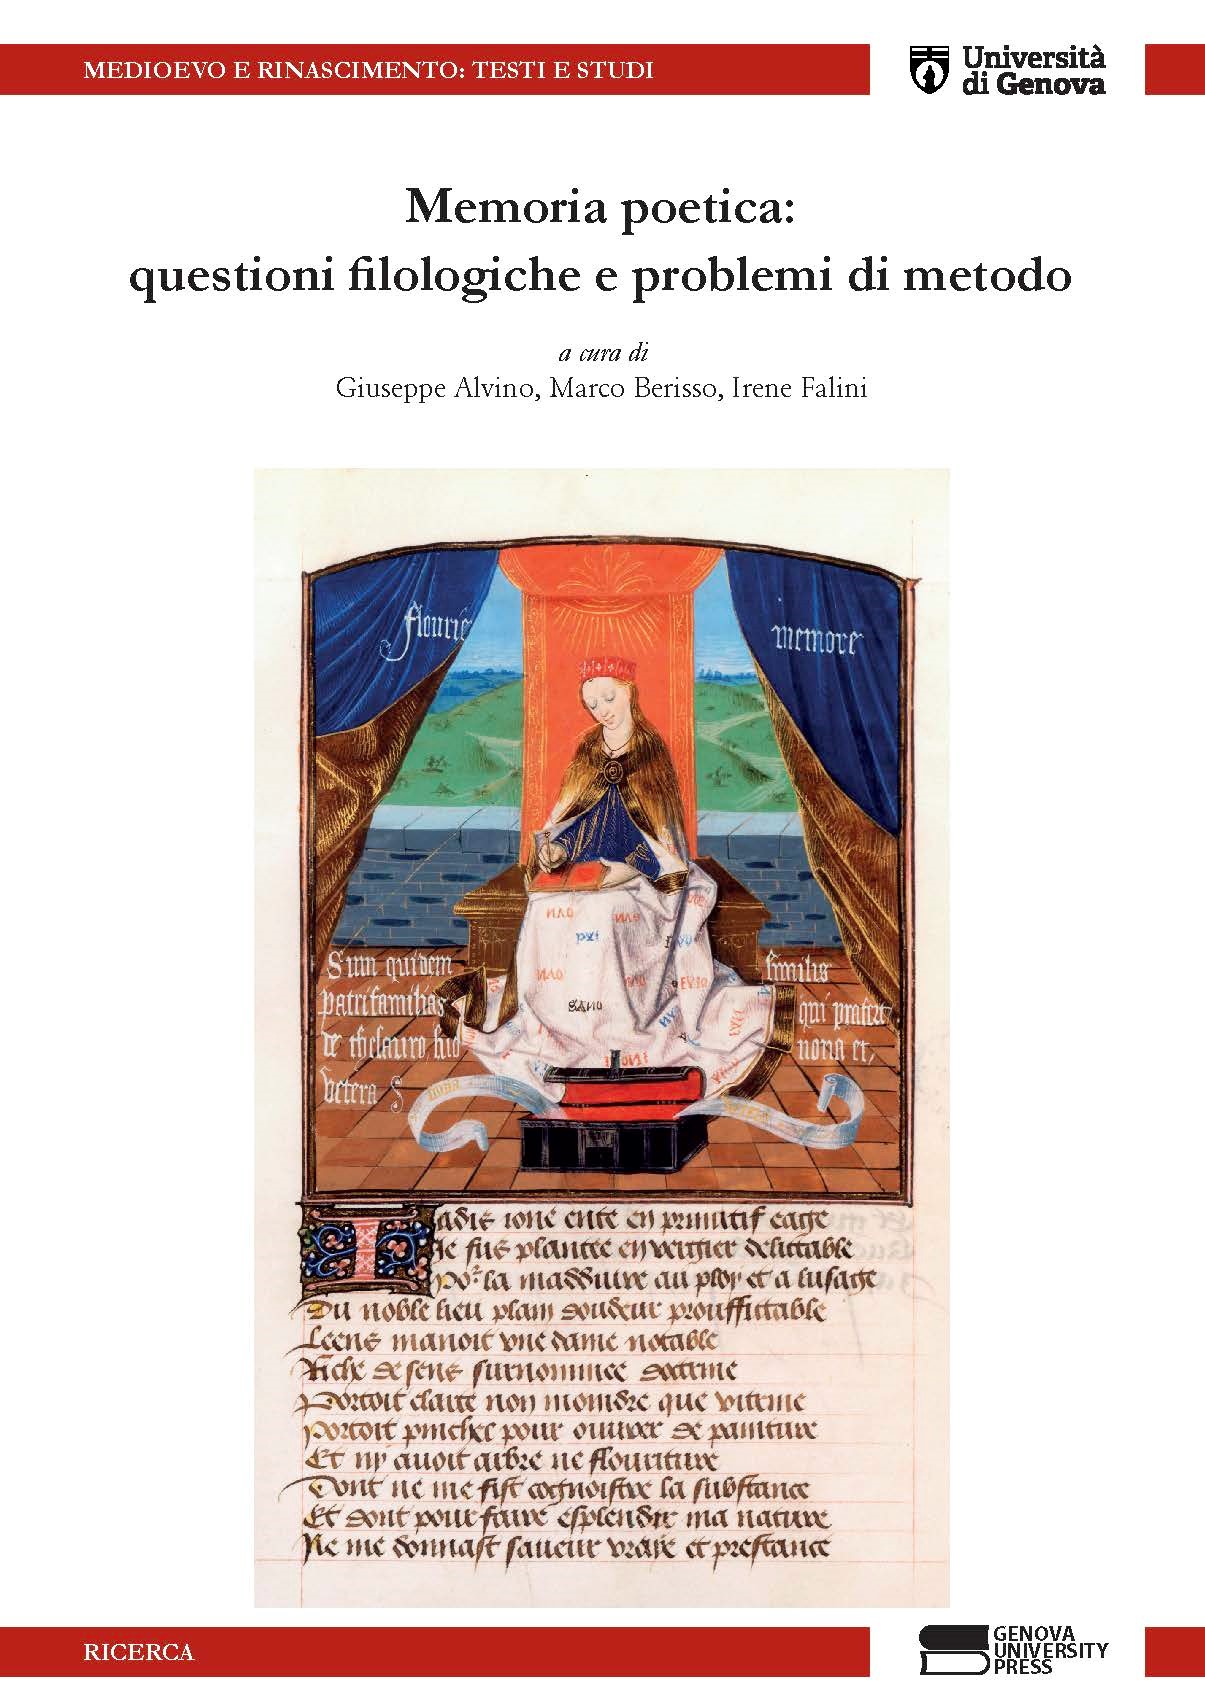 Memoria poetica: questioni filologiche e problemi di metodo A cura di Giuseppe Alvino, Marco Berisso e Irene Falini